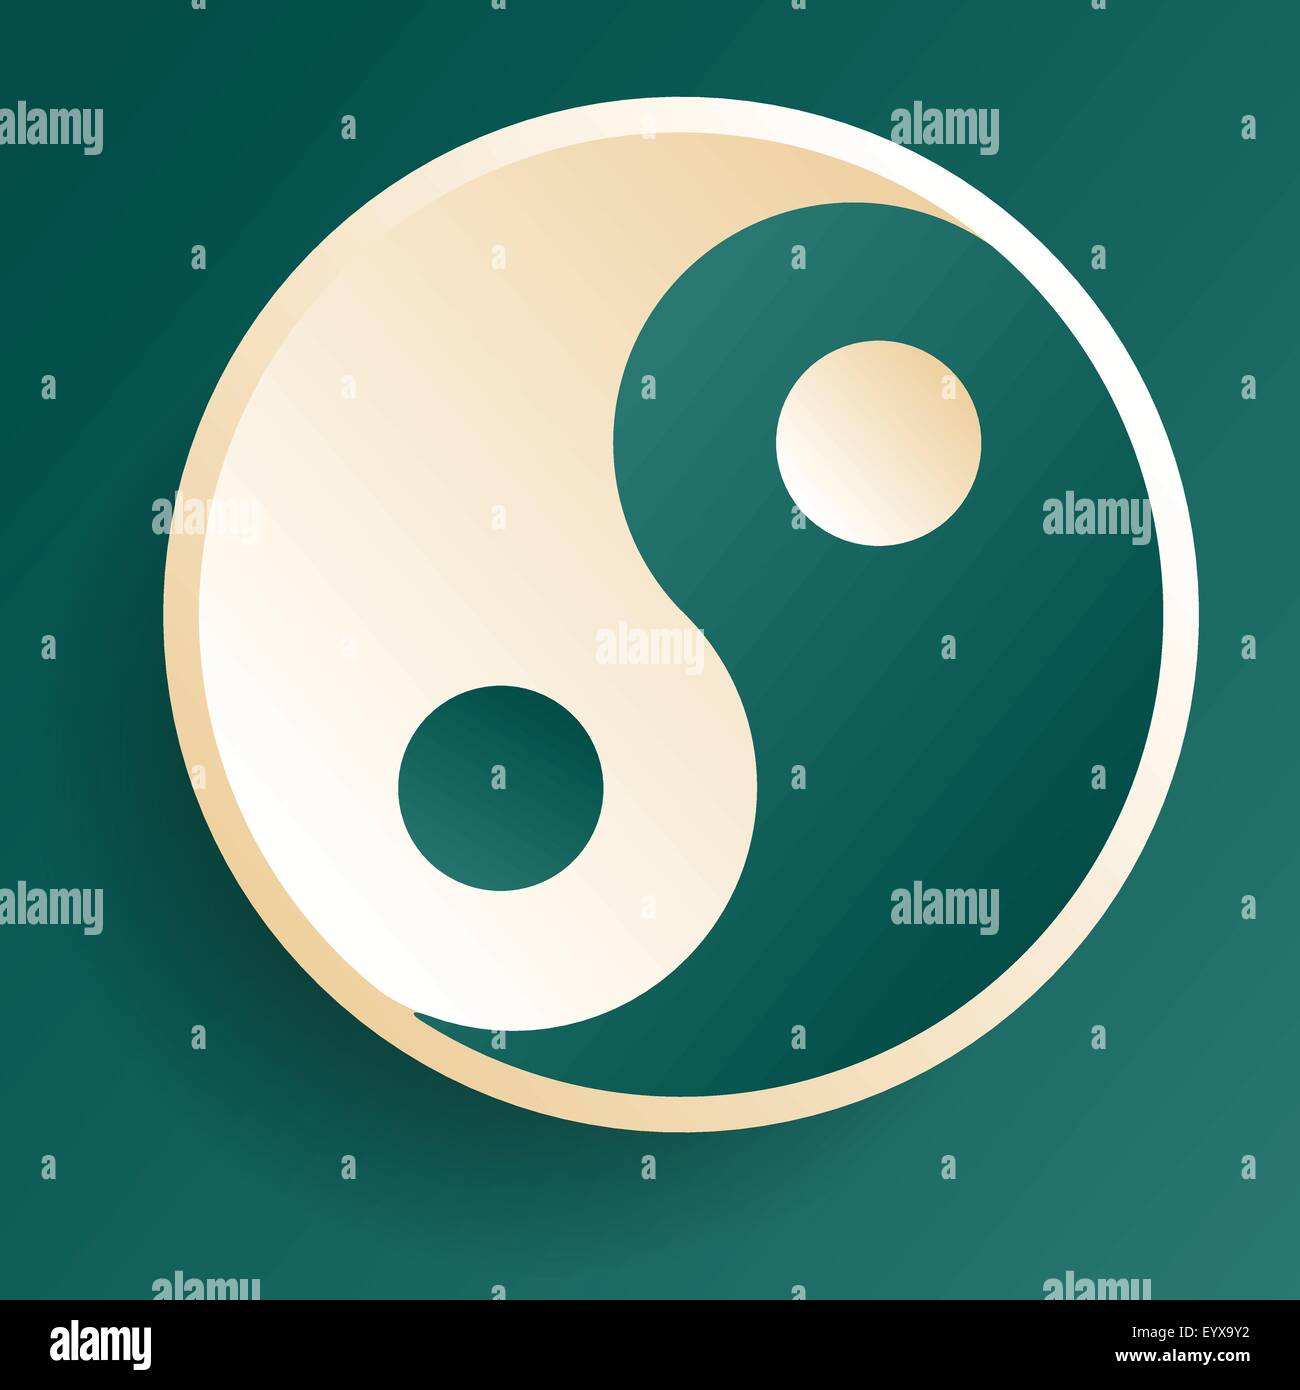 Harmony balance symbol ying-yang vector illustration. Stock Vector